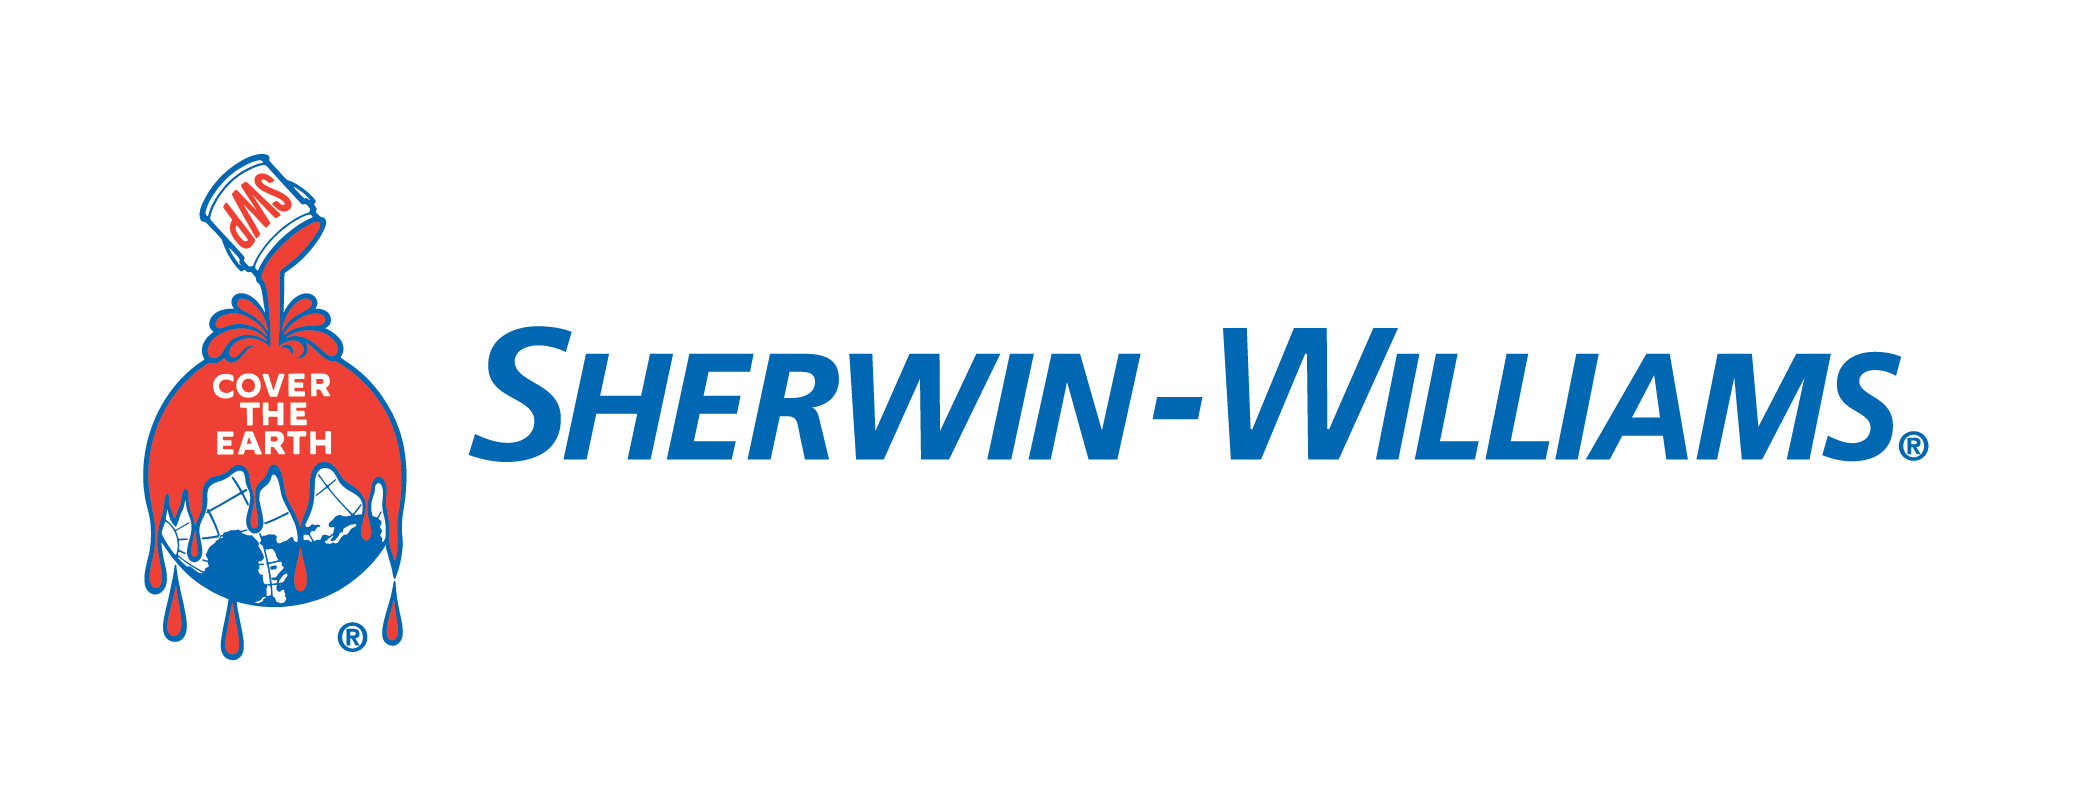 The Sherwin-Williams Company Company Logo